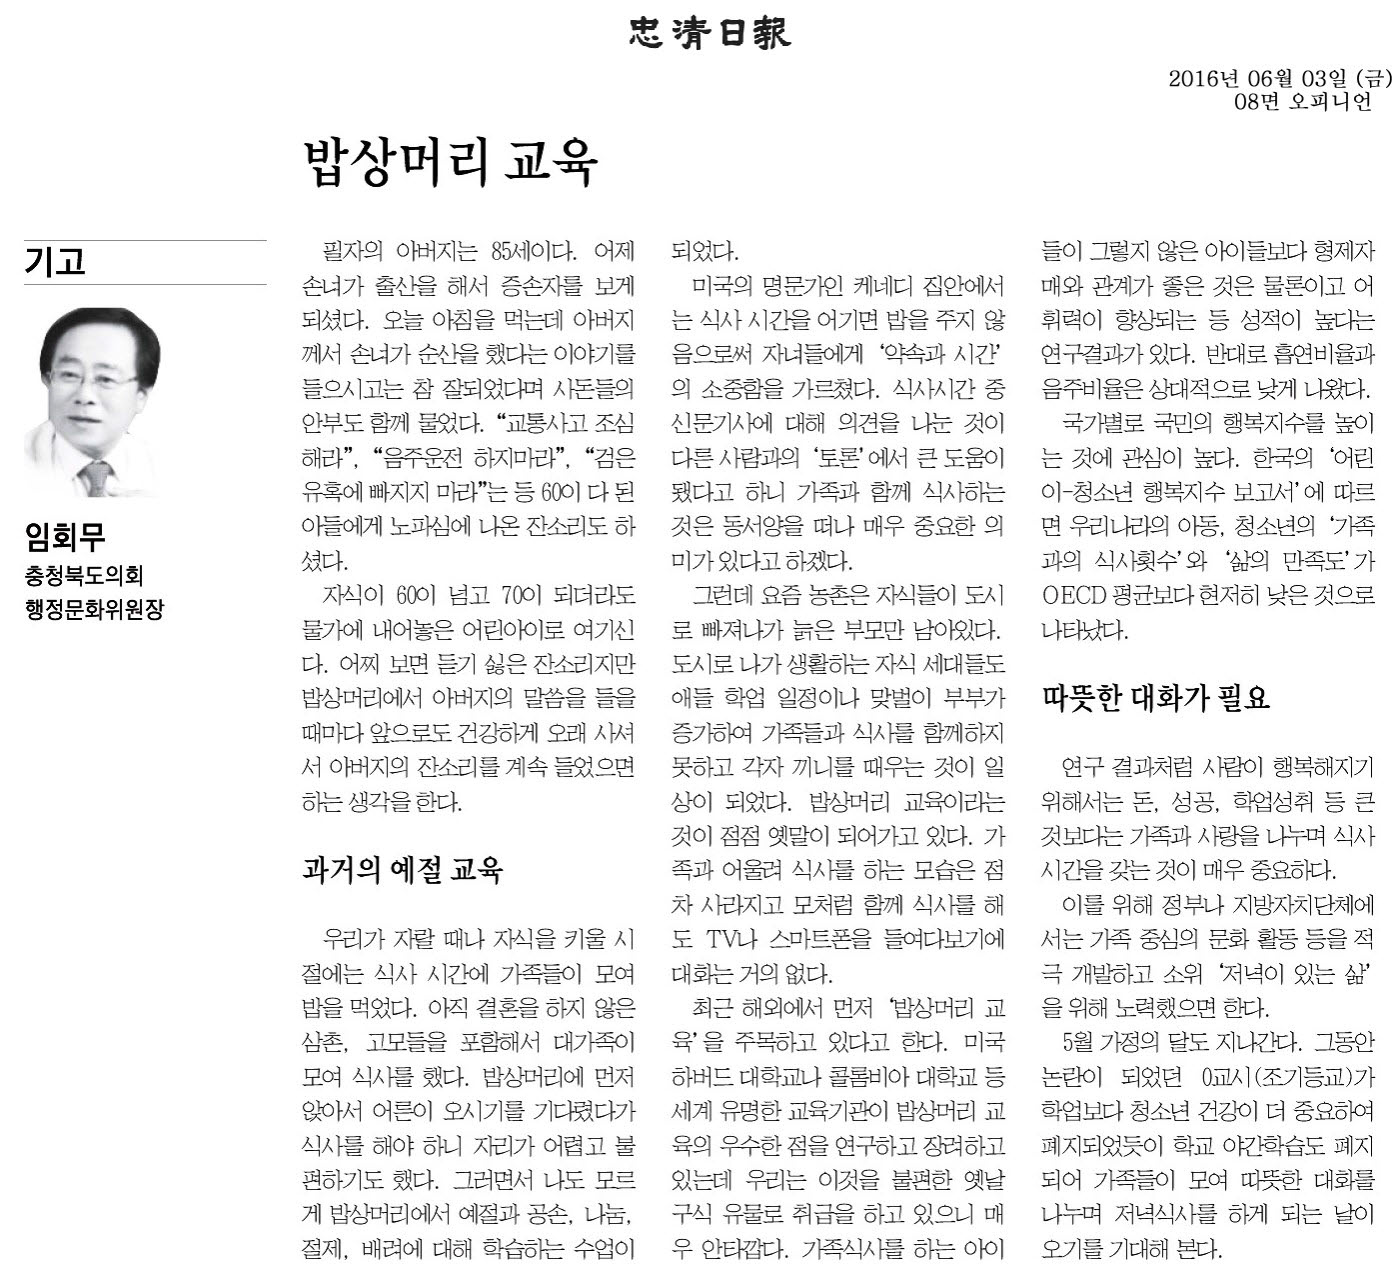 밥상머리 교육-임회무 의원(충청일보 2016년 6월 3일) - 1